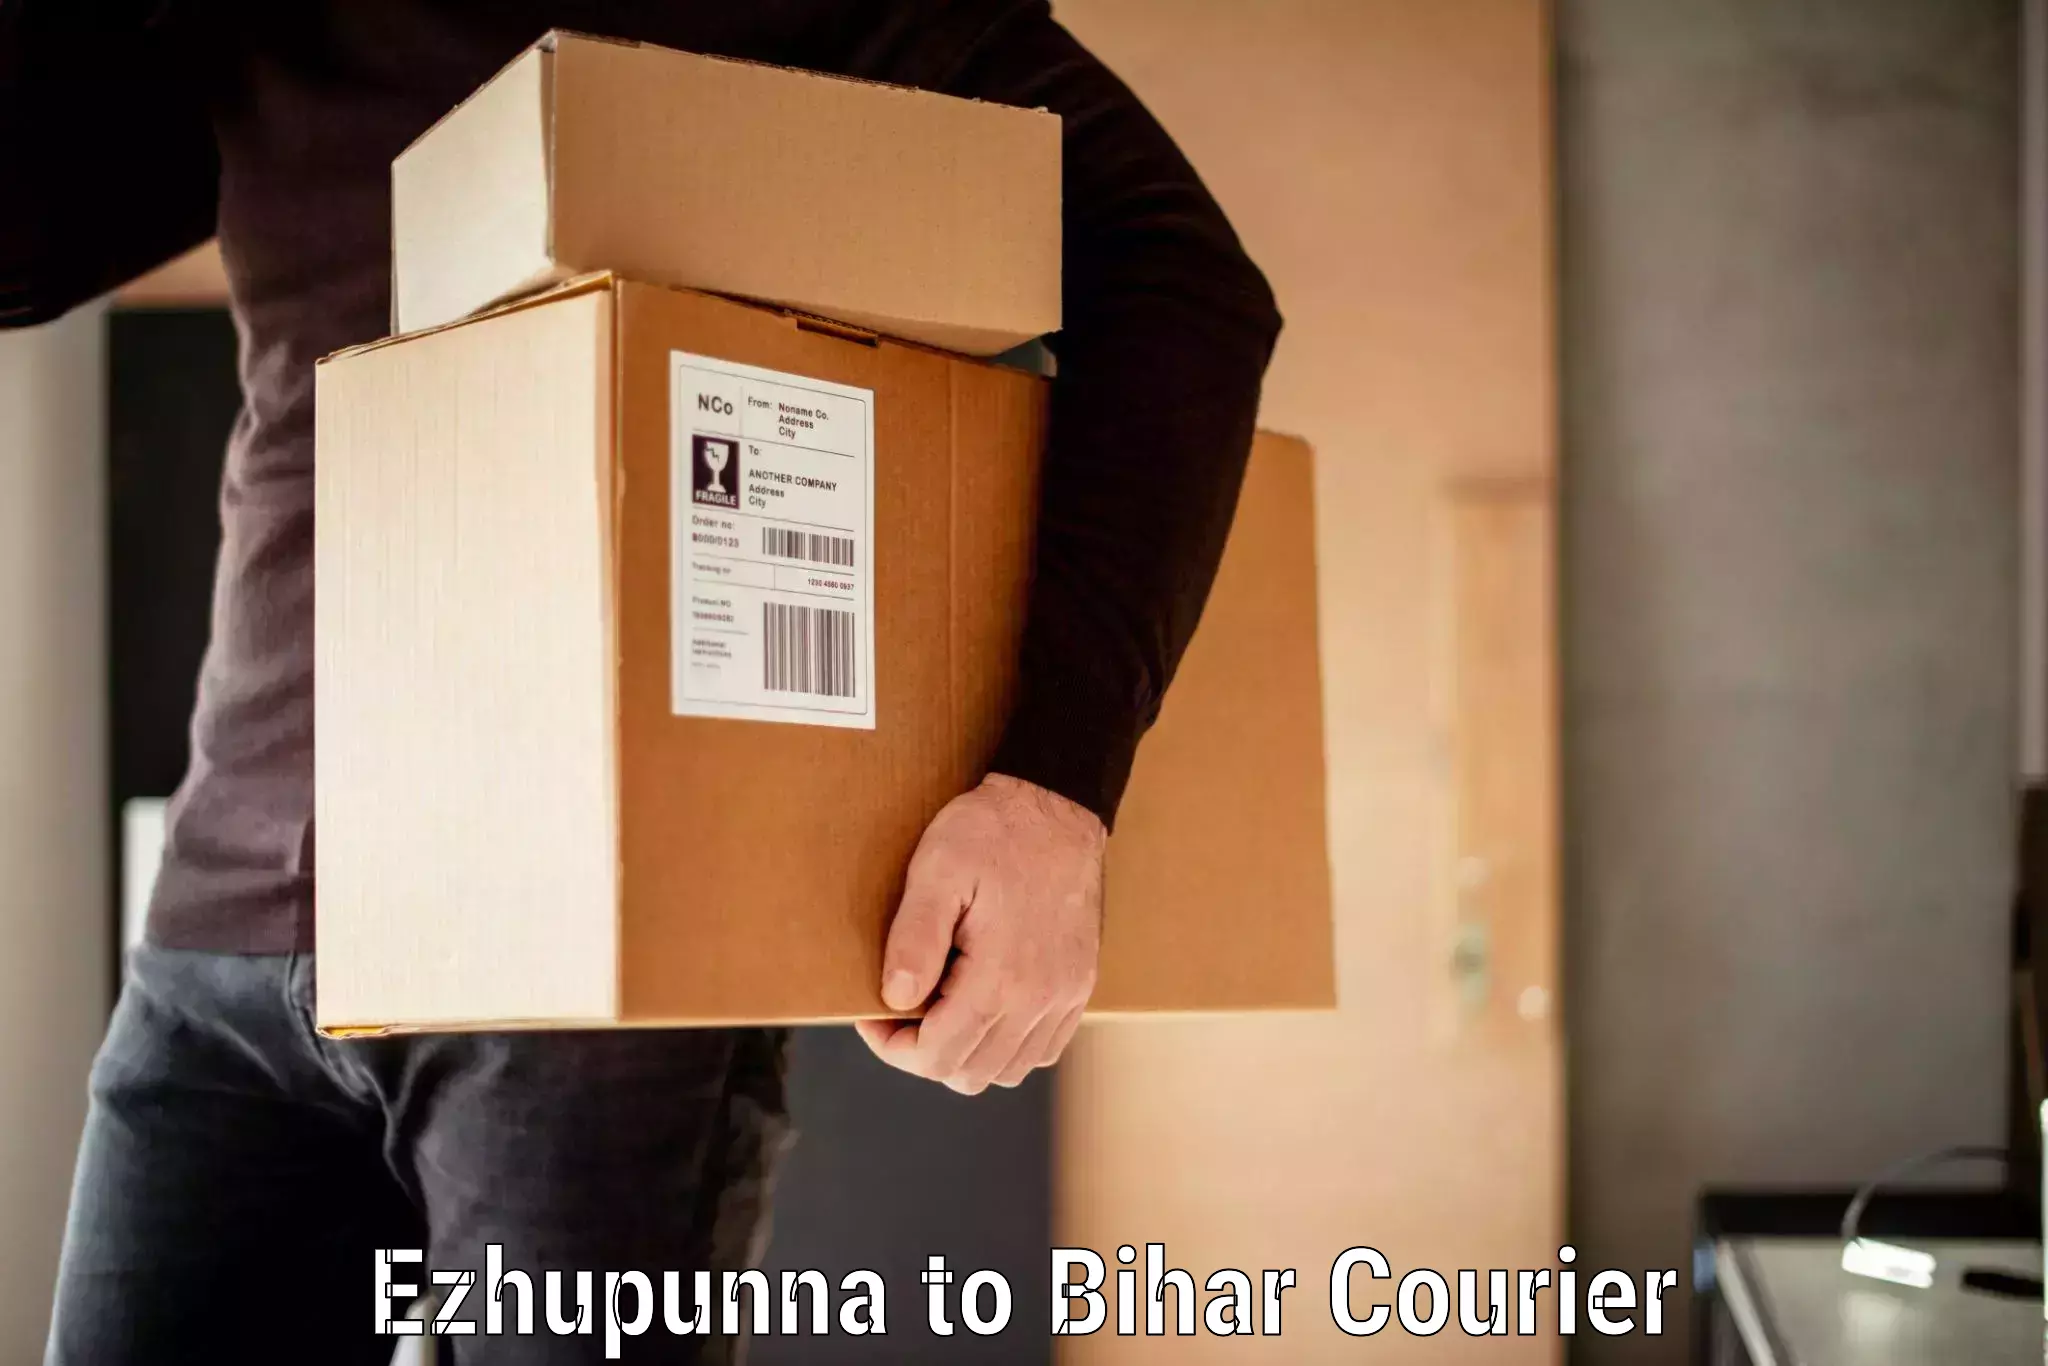 Luggage delivery system Ezhupunna to Dumraon